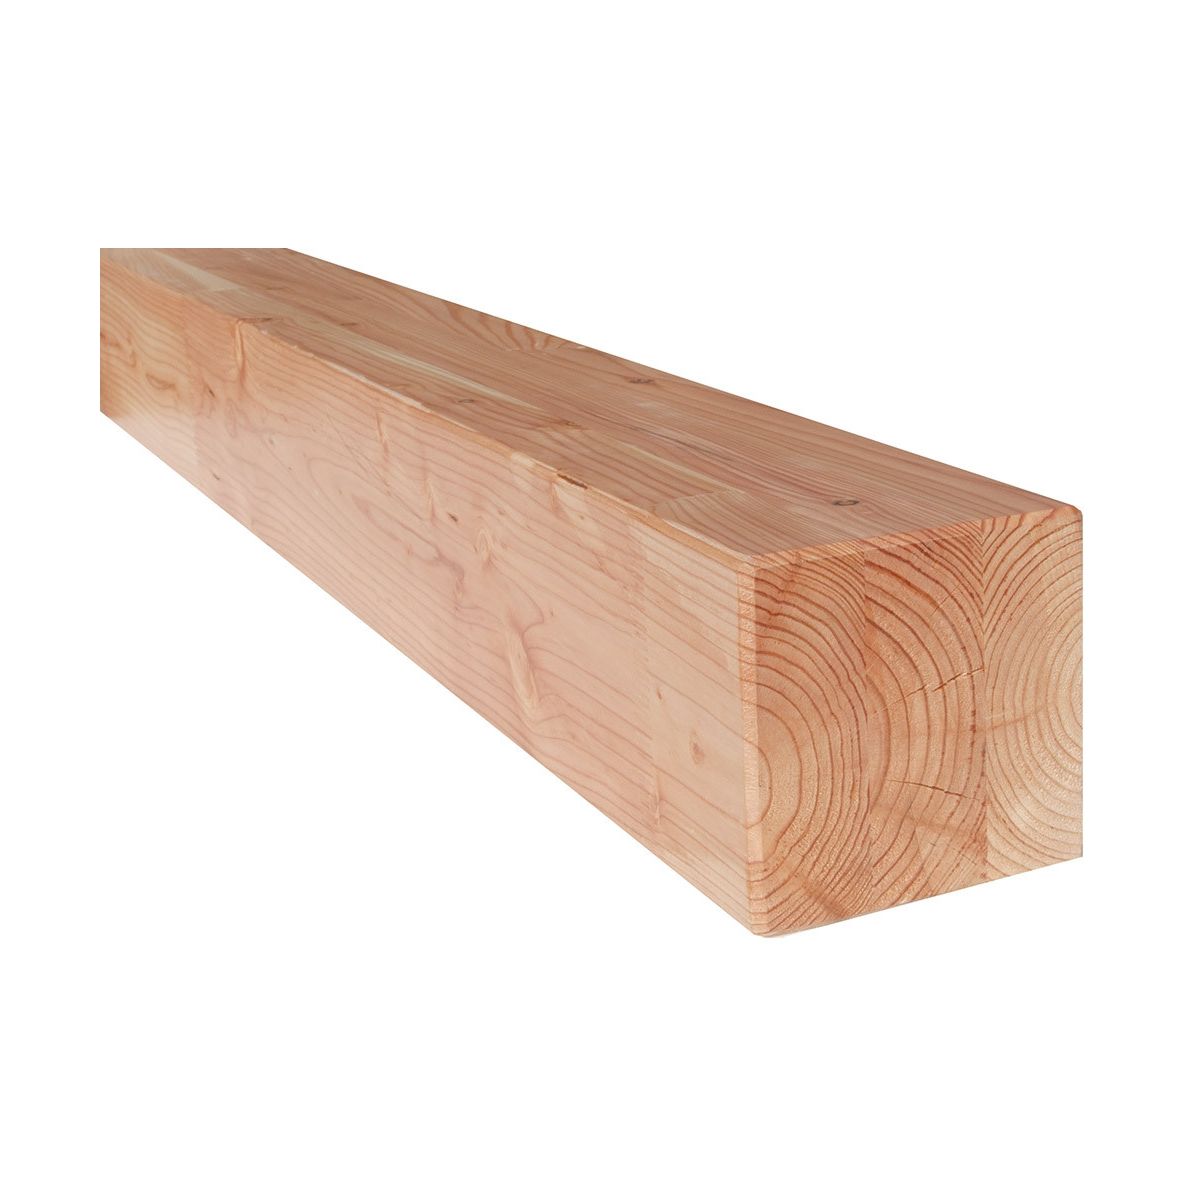 Poutre en bois épicéa - Section 20x20 - Longueur 6m